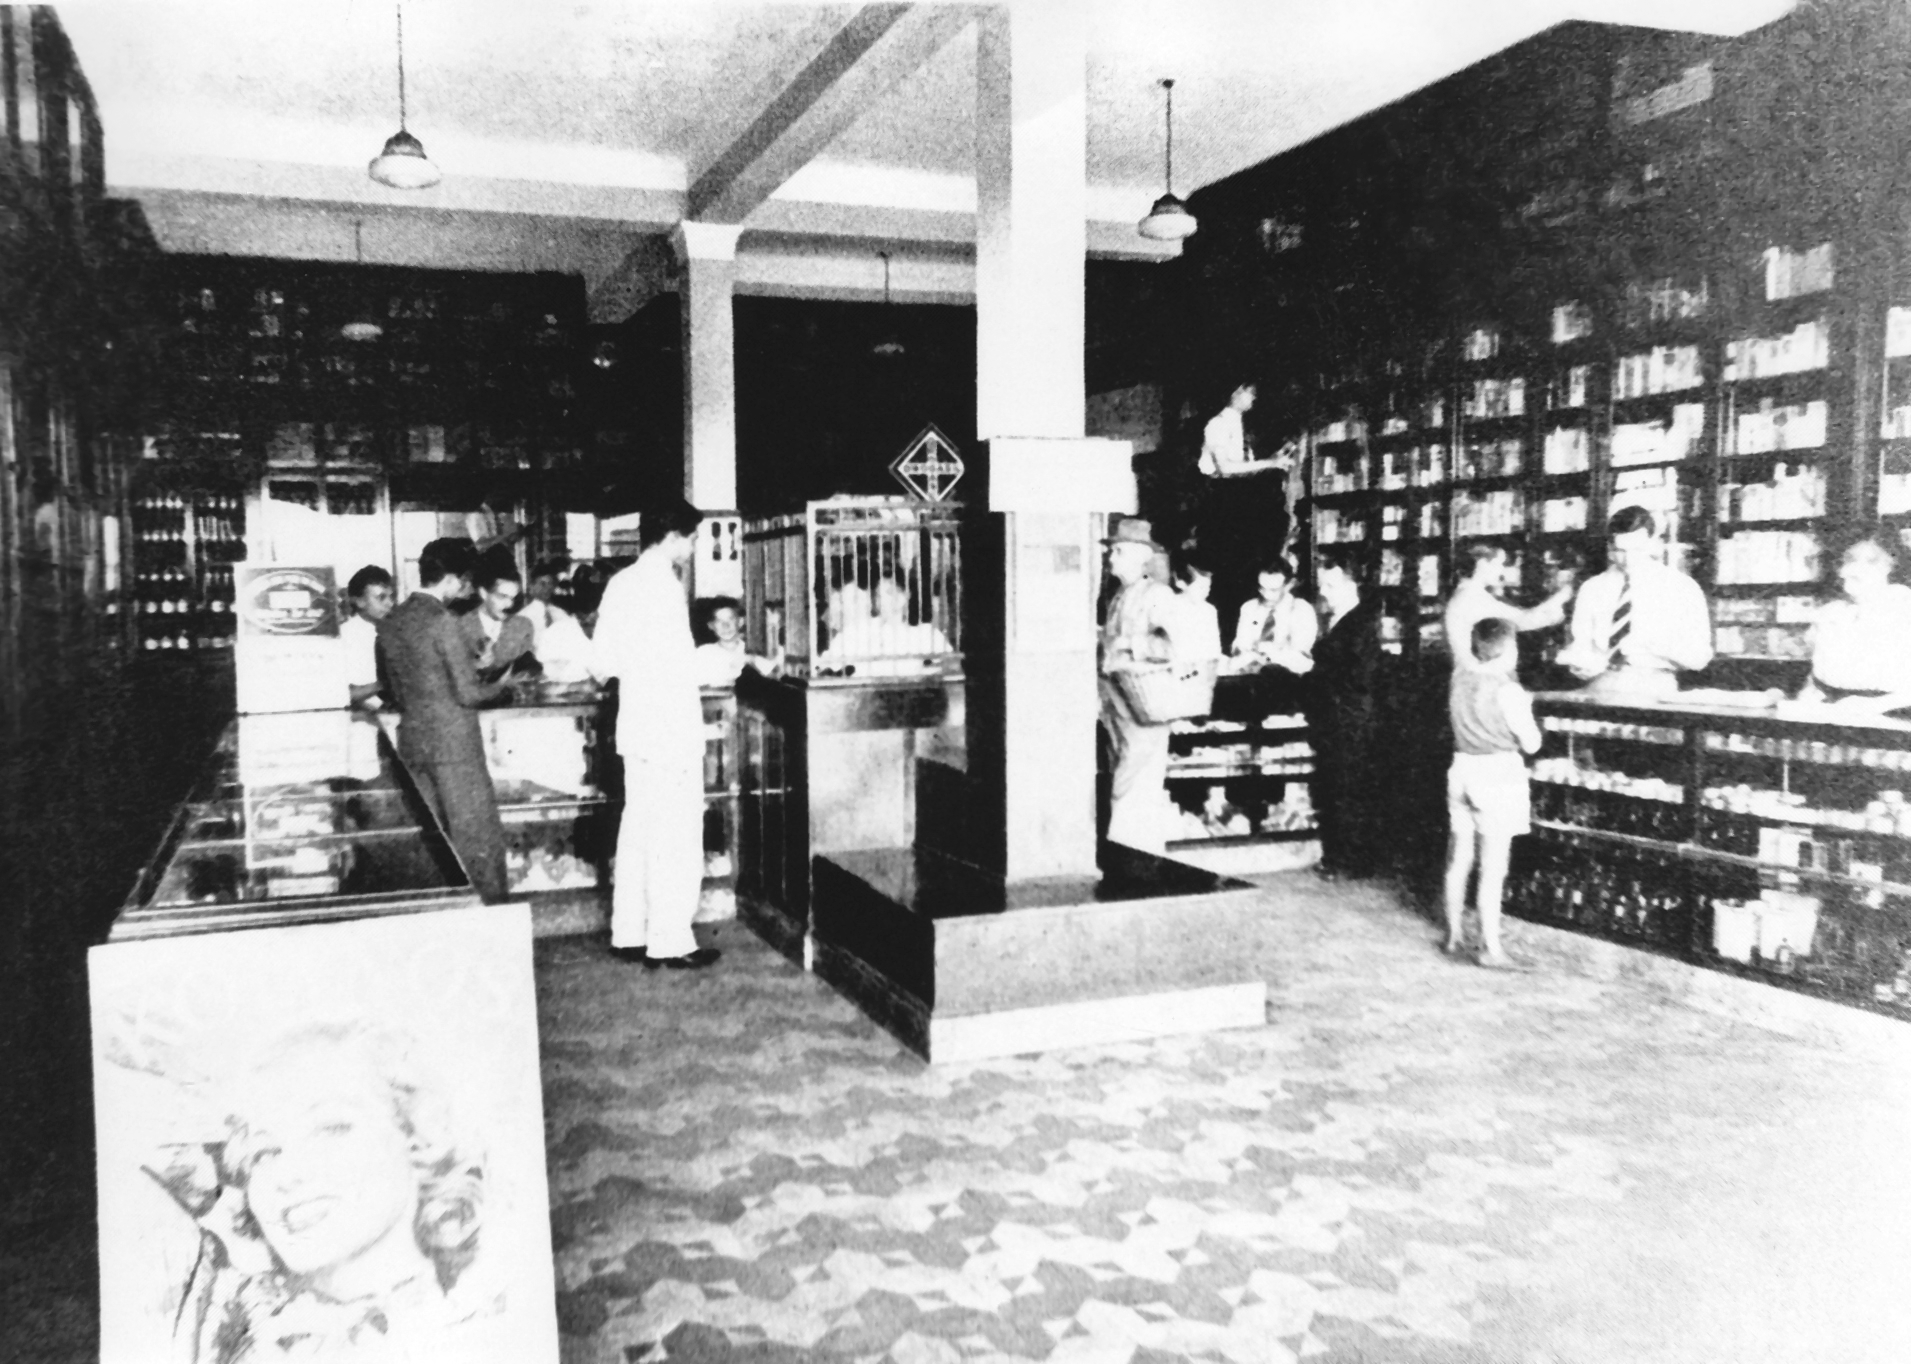 Foto em preto e branco do interior de uma farmácia, com balcões, colunas, prateleiras, atendentes e consumidores.